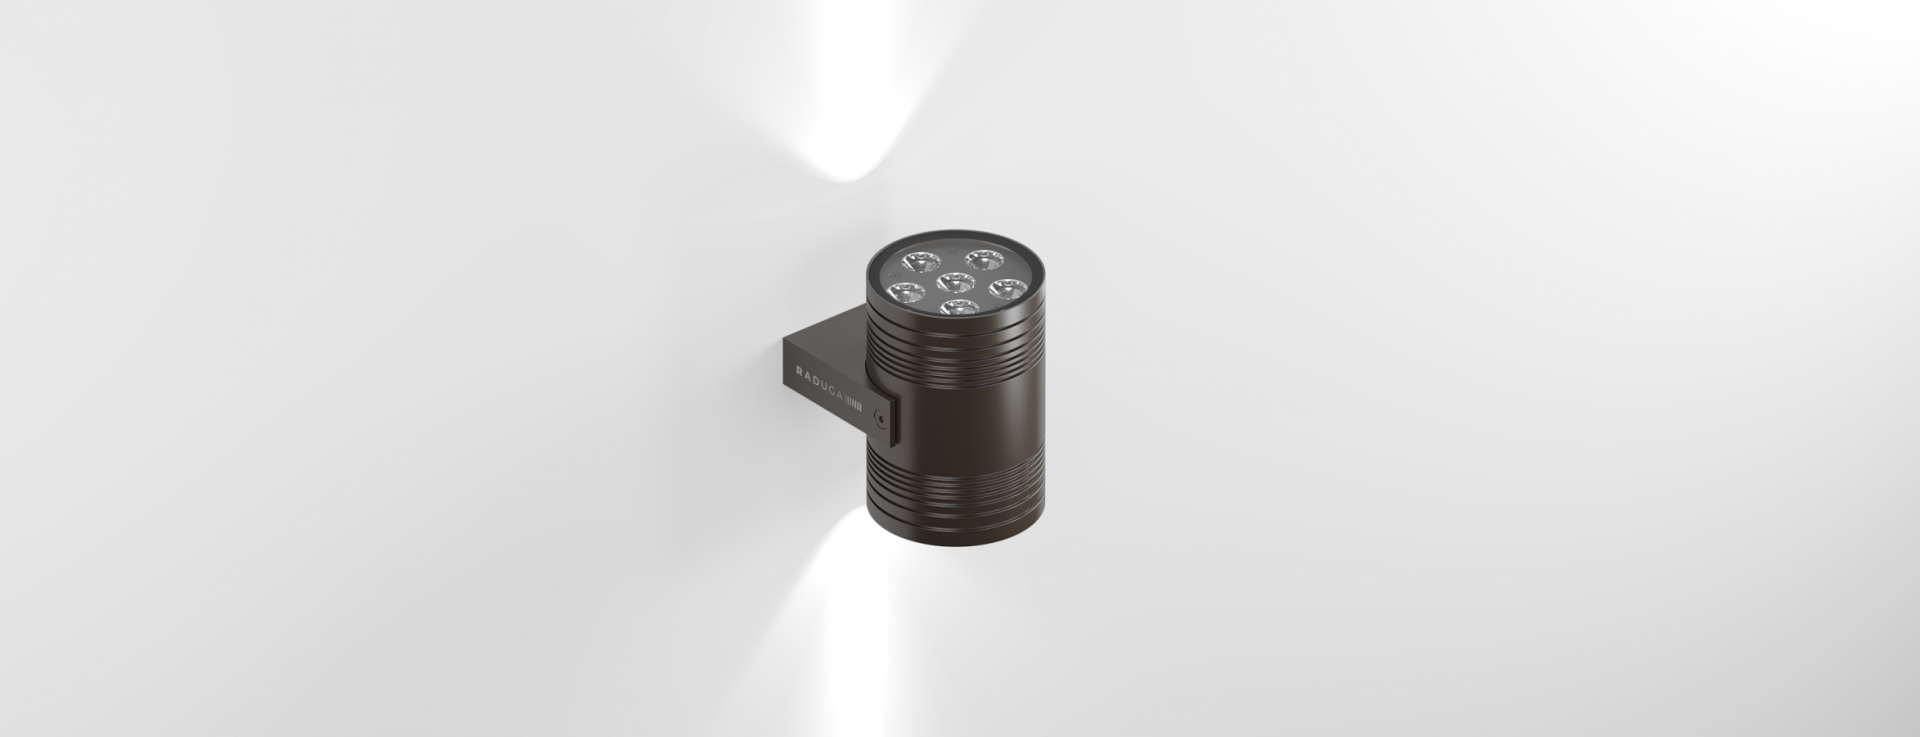 Купить двунаправленный прожектор DUPLEX.  Двунаправленный  архитектурный светильник  IP67 - Купить прожектор светодиодный LED.  Прожектор архитектурный на фасад бренда RADUGA